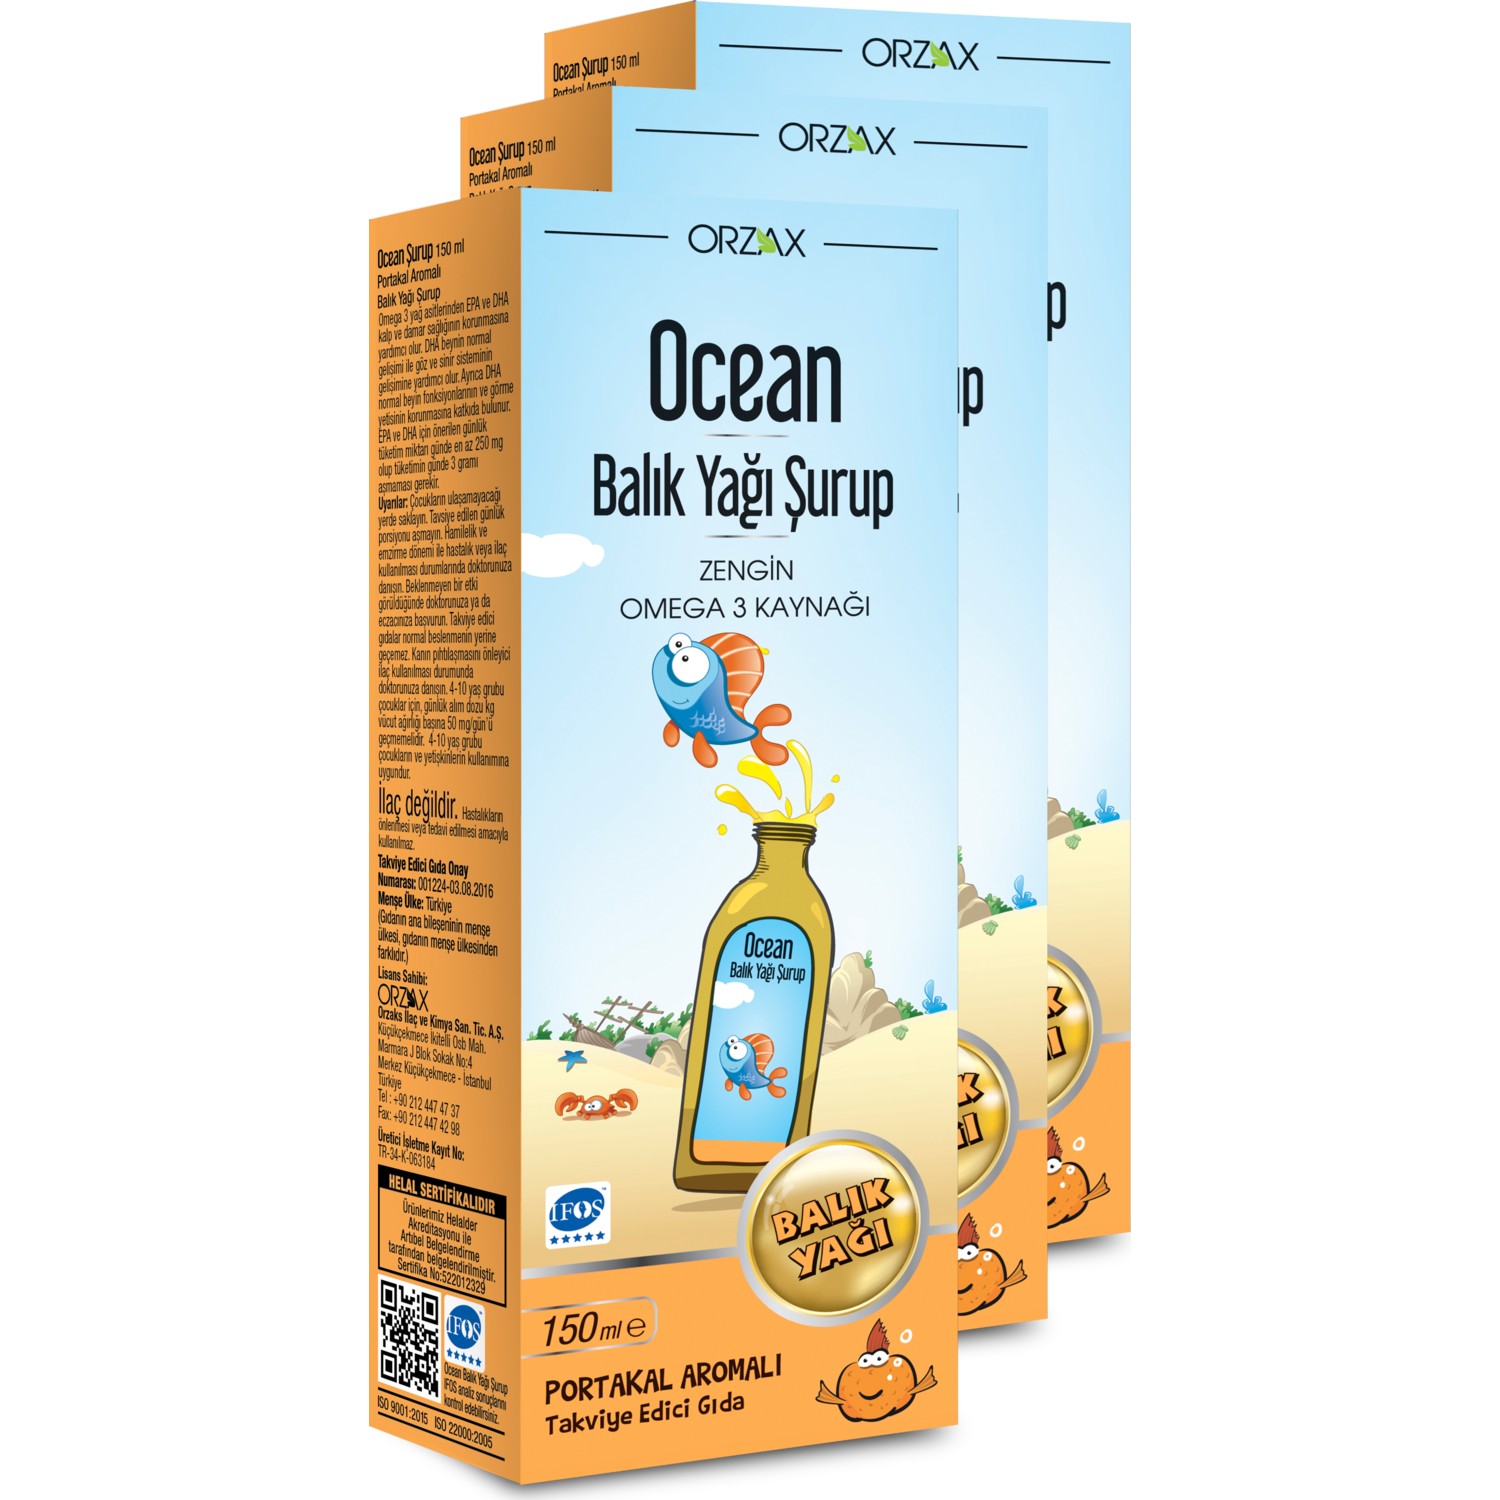 Сироп Ocean Plus Orange, 3 упаковки сироп orzax ocean omega 3 150 мл